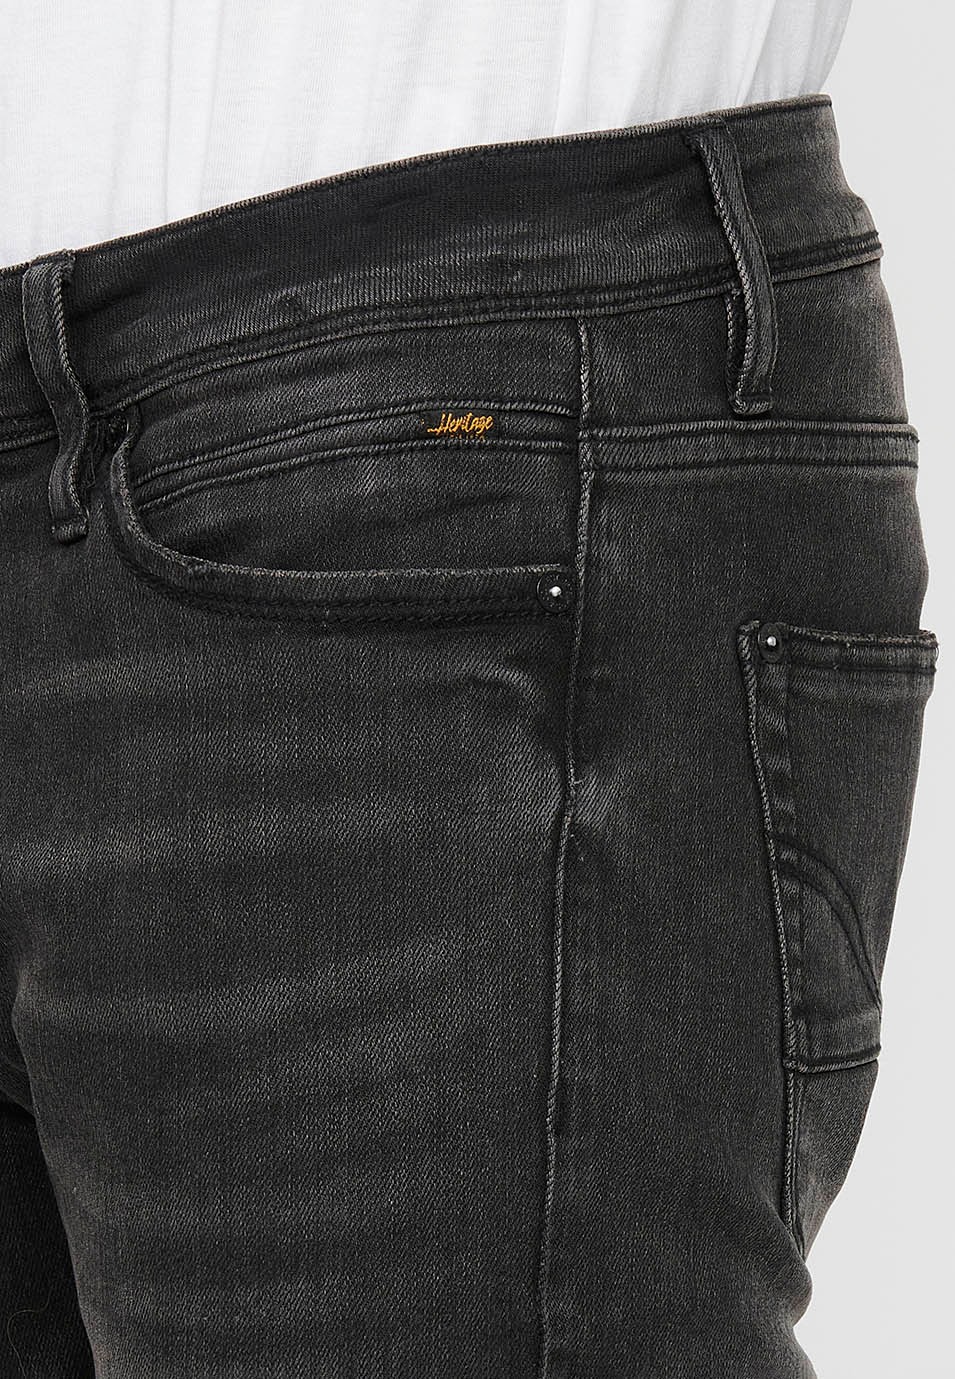 Pantalons texans llarg straigth regular fit amb Tancament davanter amb cremallera i botó de Color Denim Negre per a Home 6